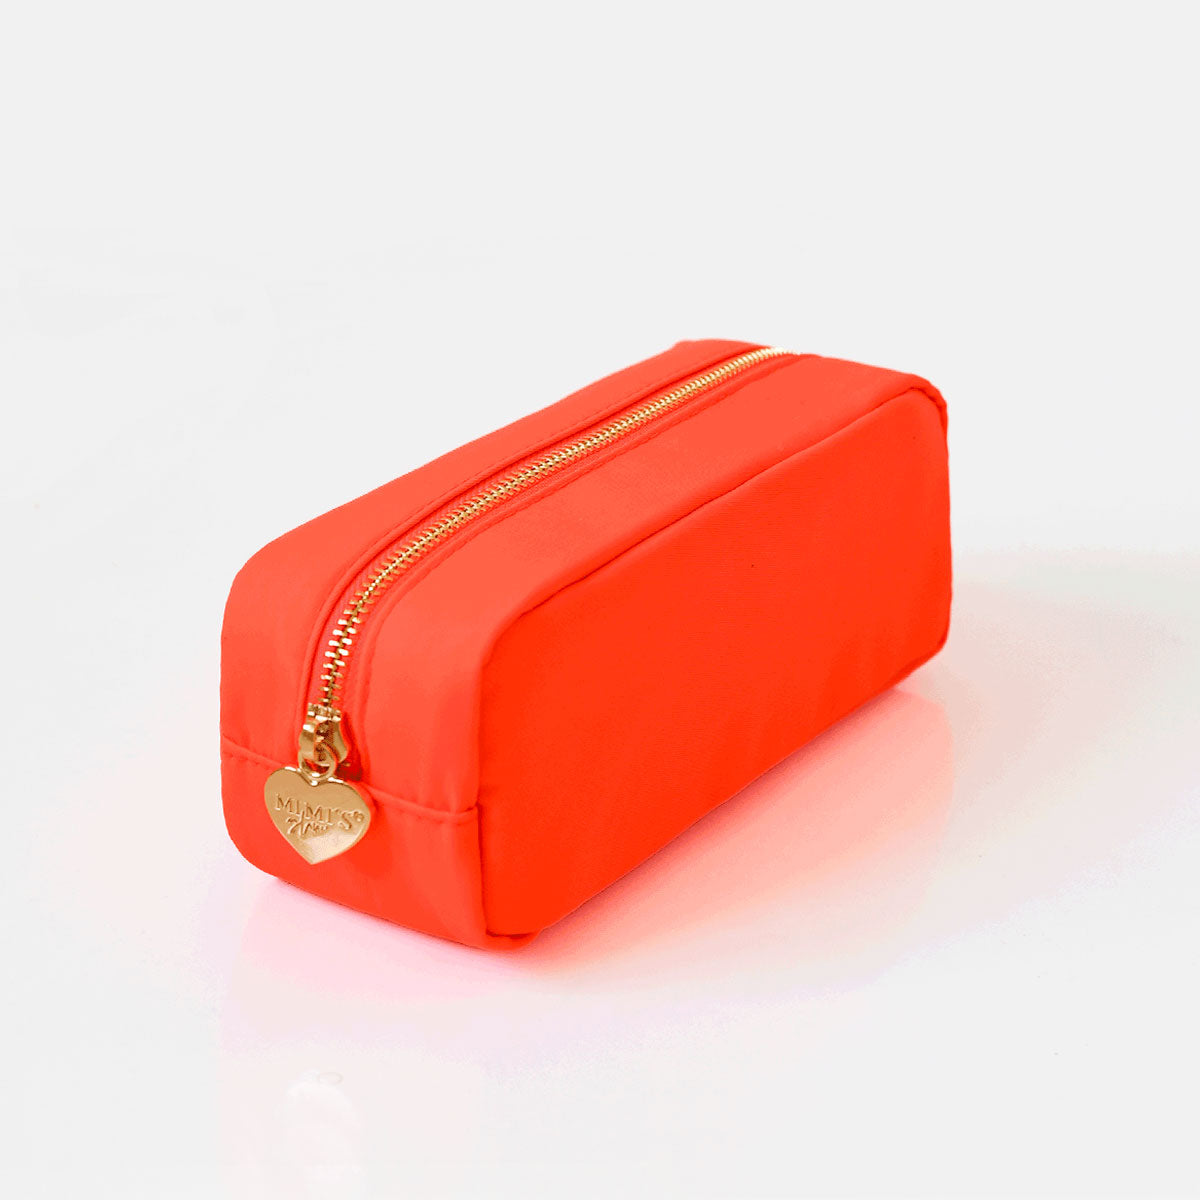 2er Taschen Set Neon Orange